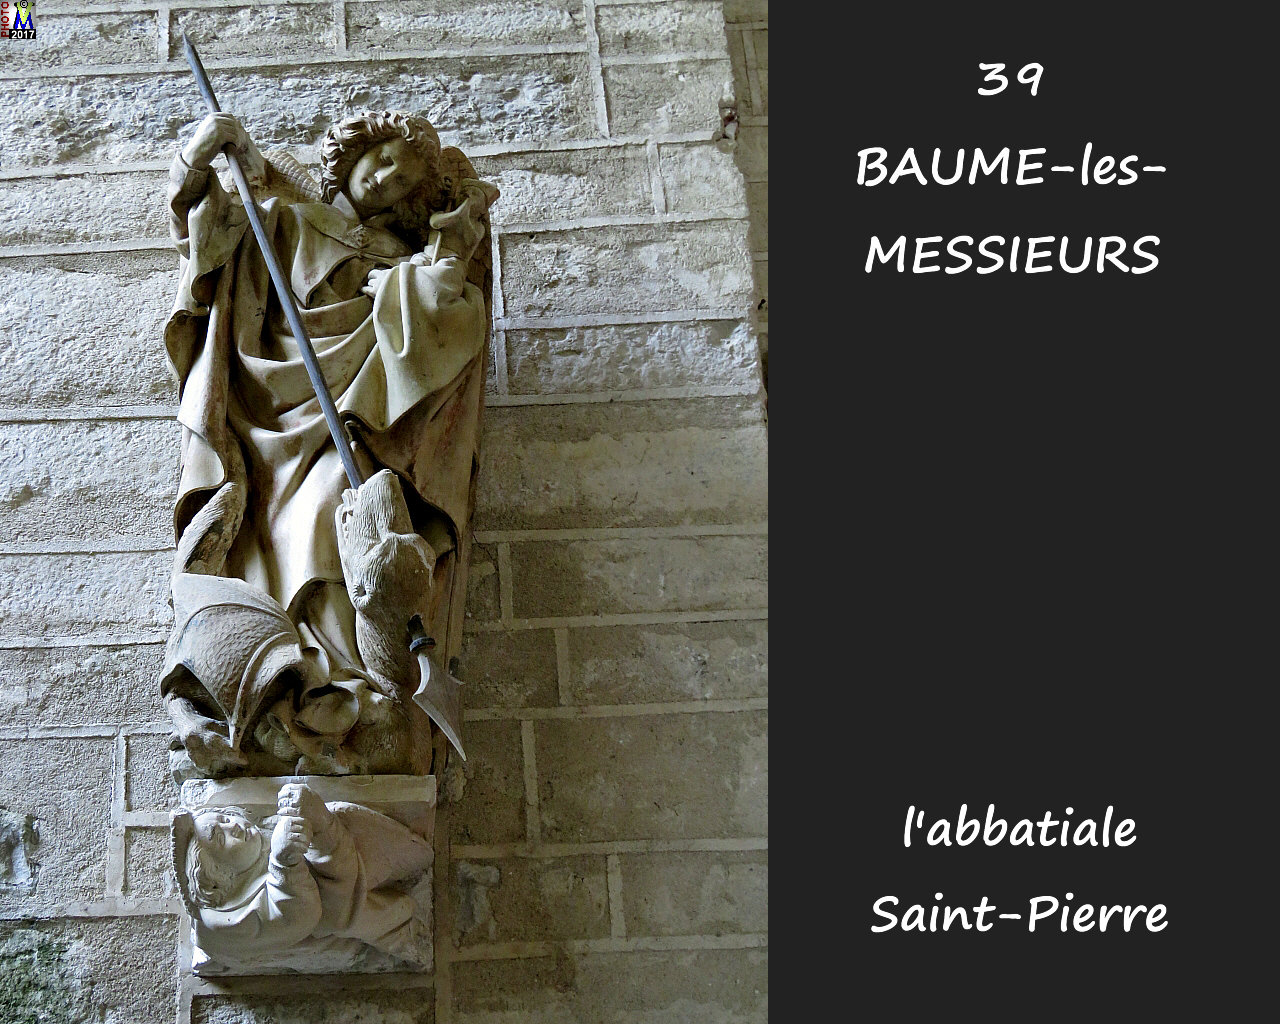 39BAUME-LES-MESSIEURS_abbatiale_280.jpg